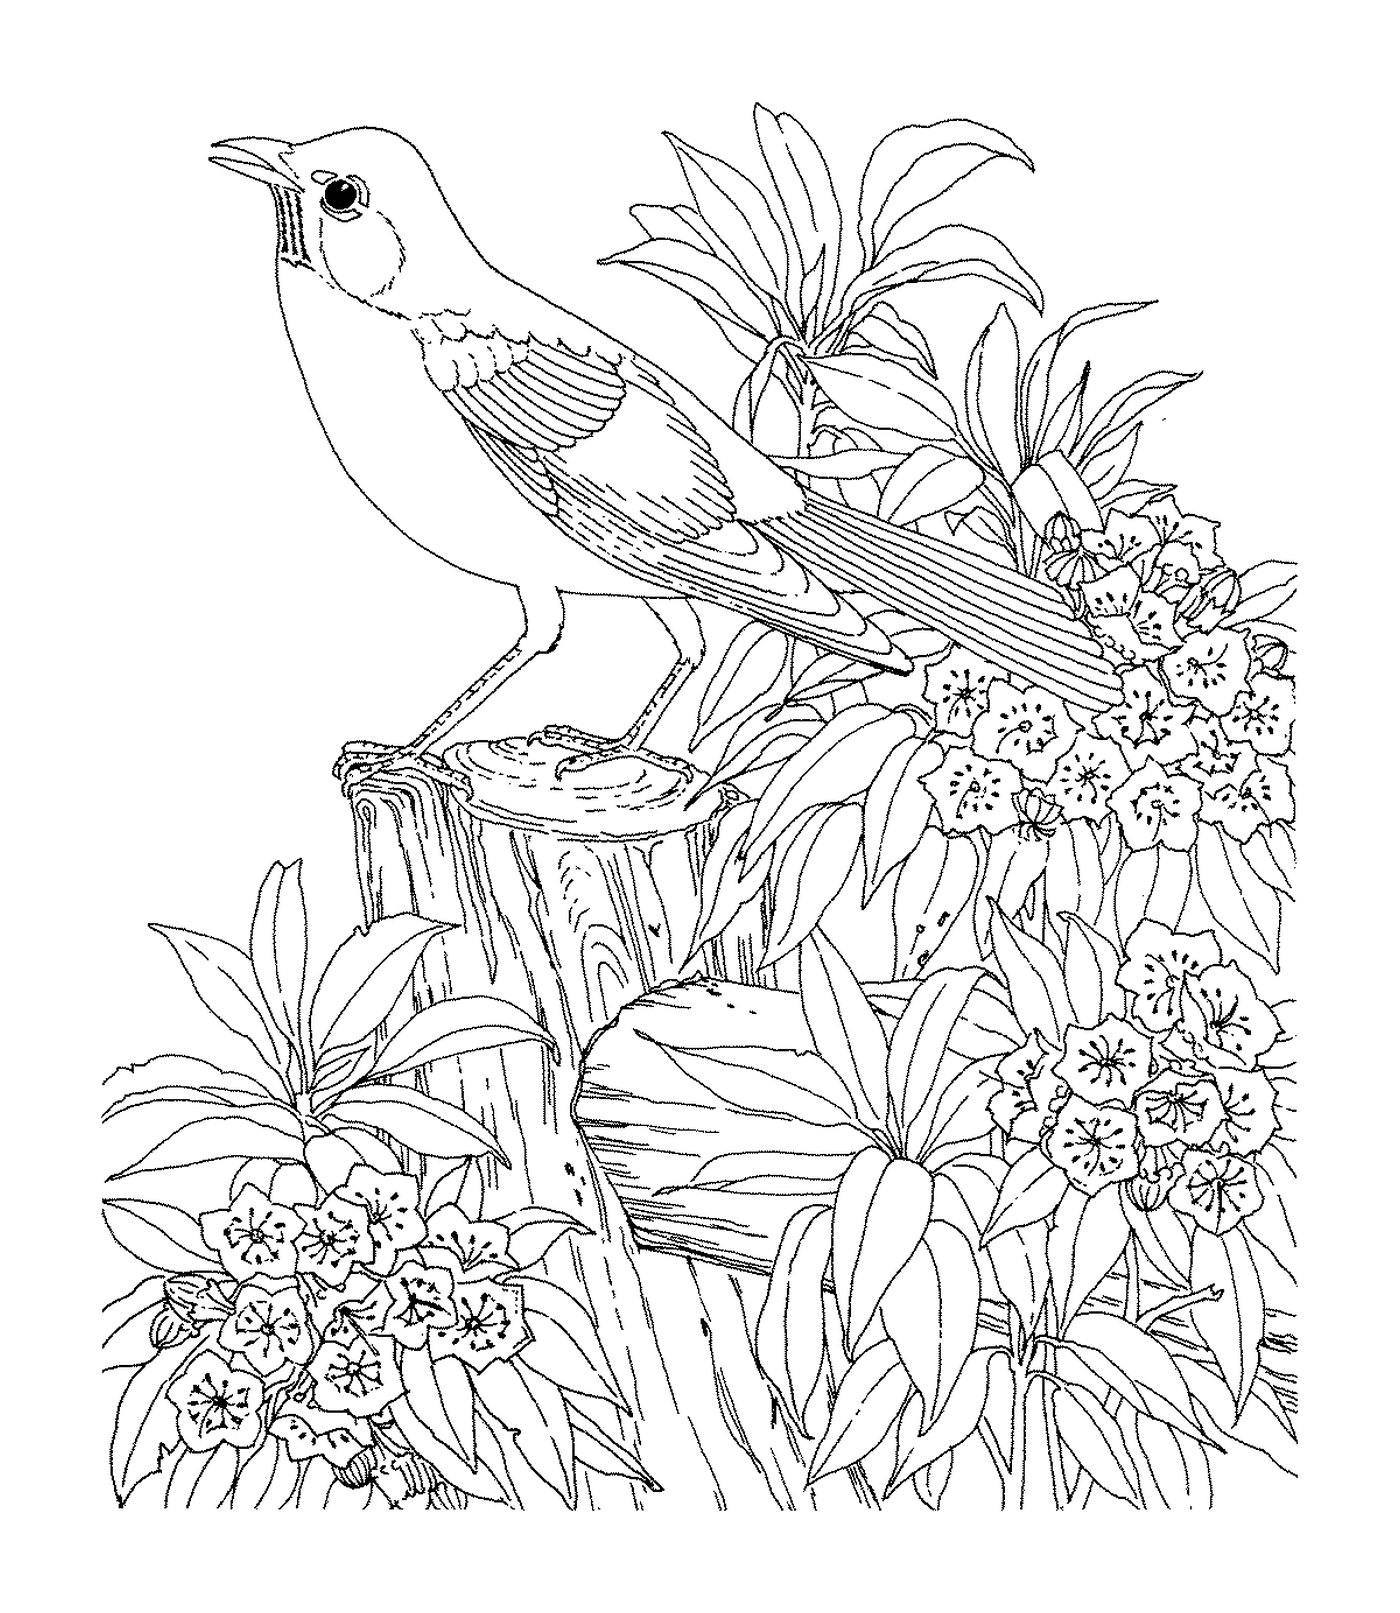  Un pájaro sentado en una rama 